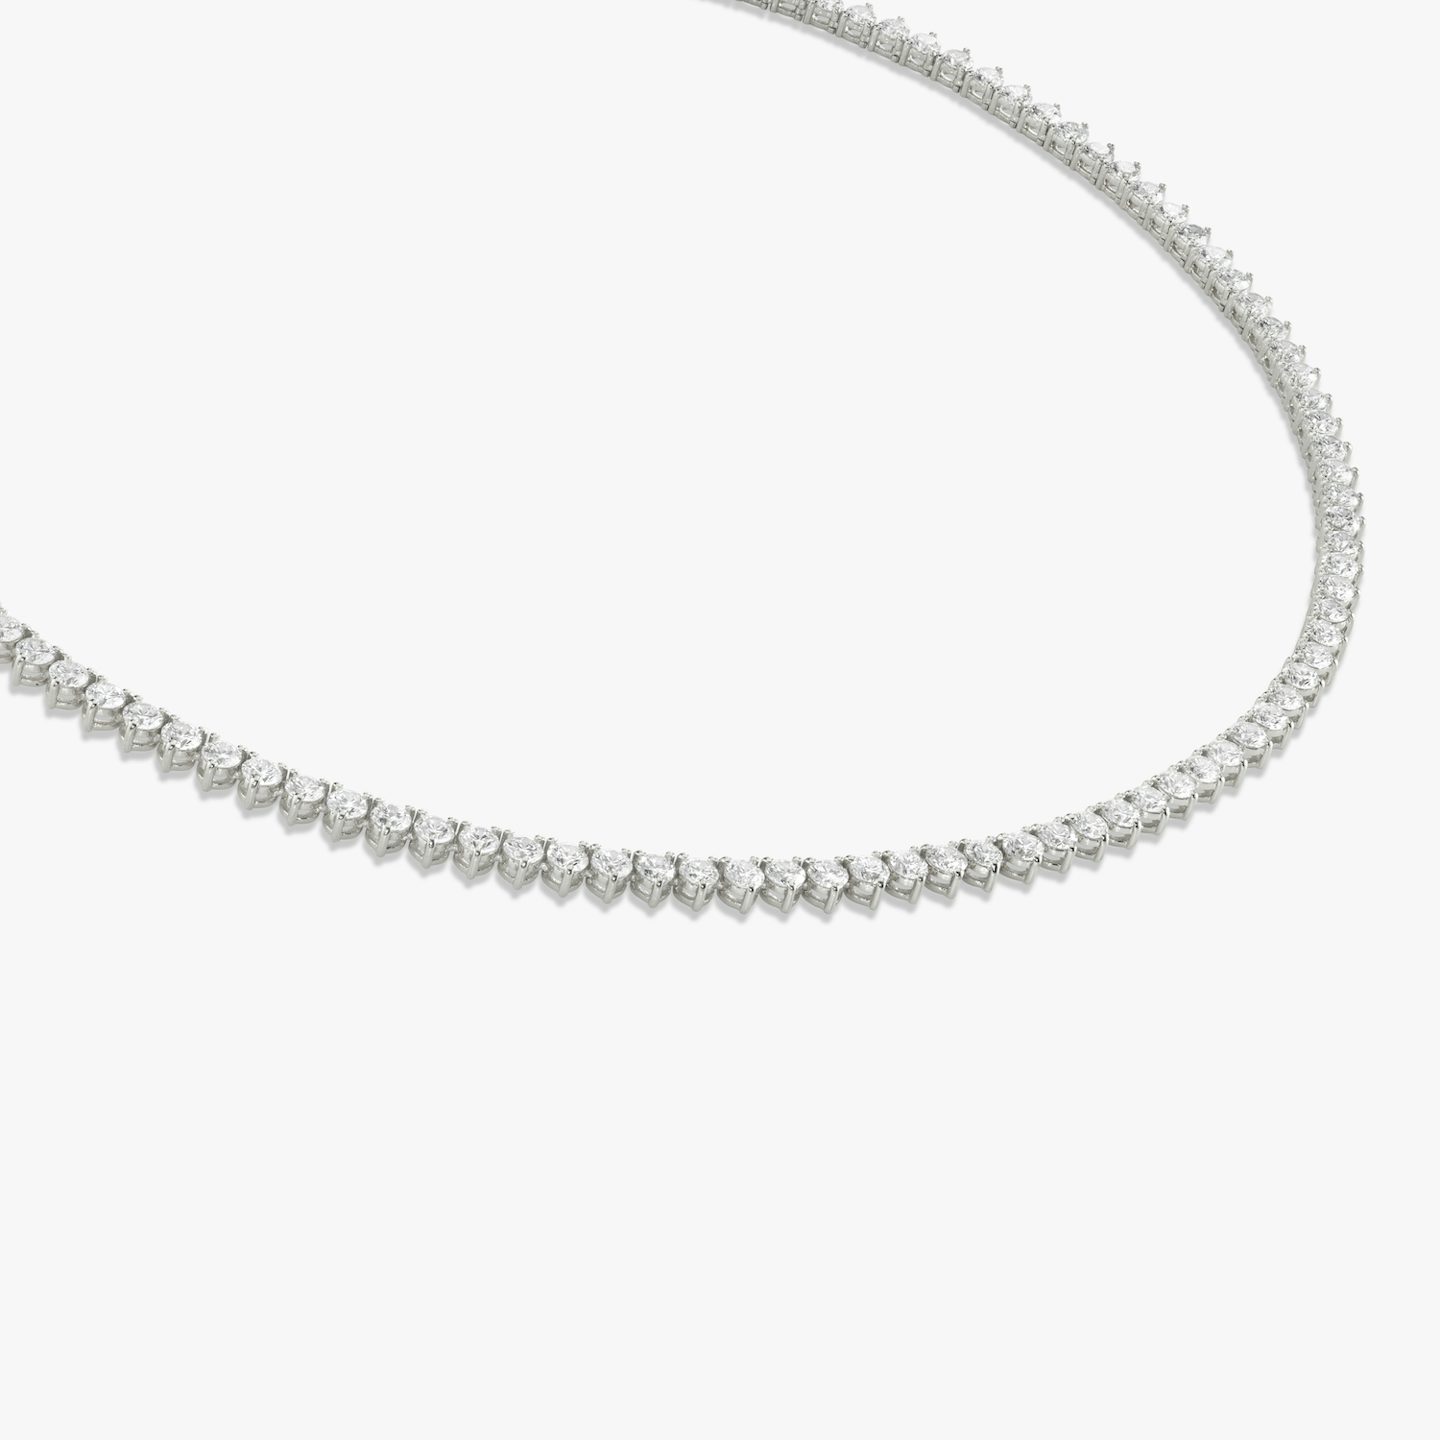 Collar de Tenis | Brillante | 14k | Oro blanco de 18 quilates | Tamaño de los diamantes: Medium | Longitud de la cadena: 15